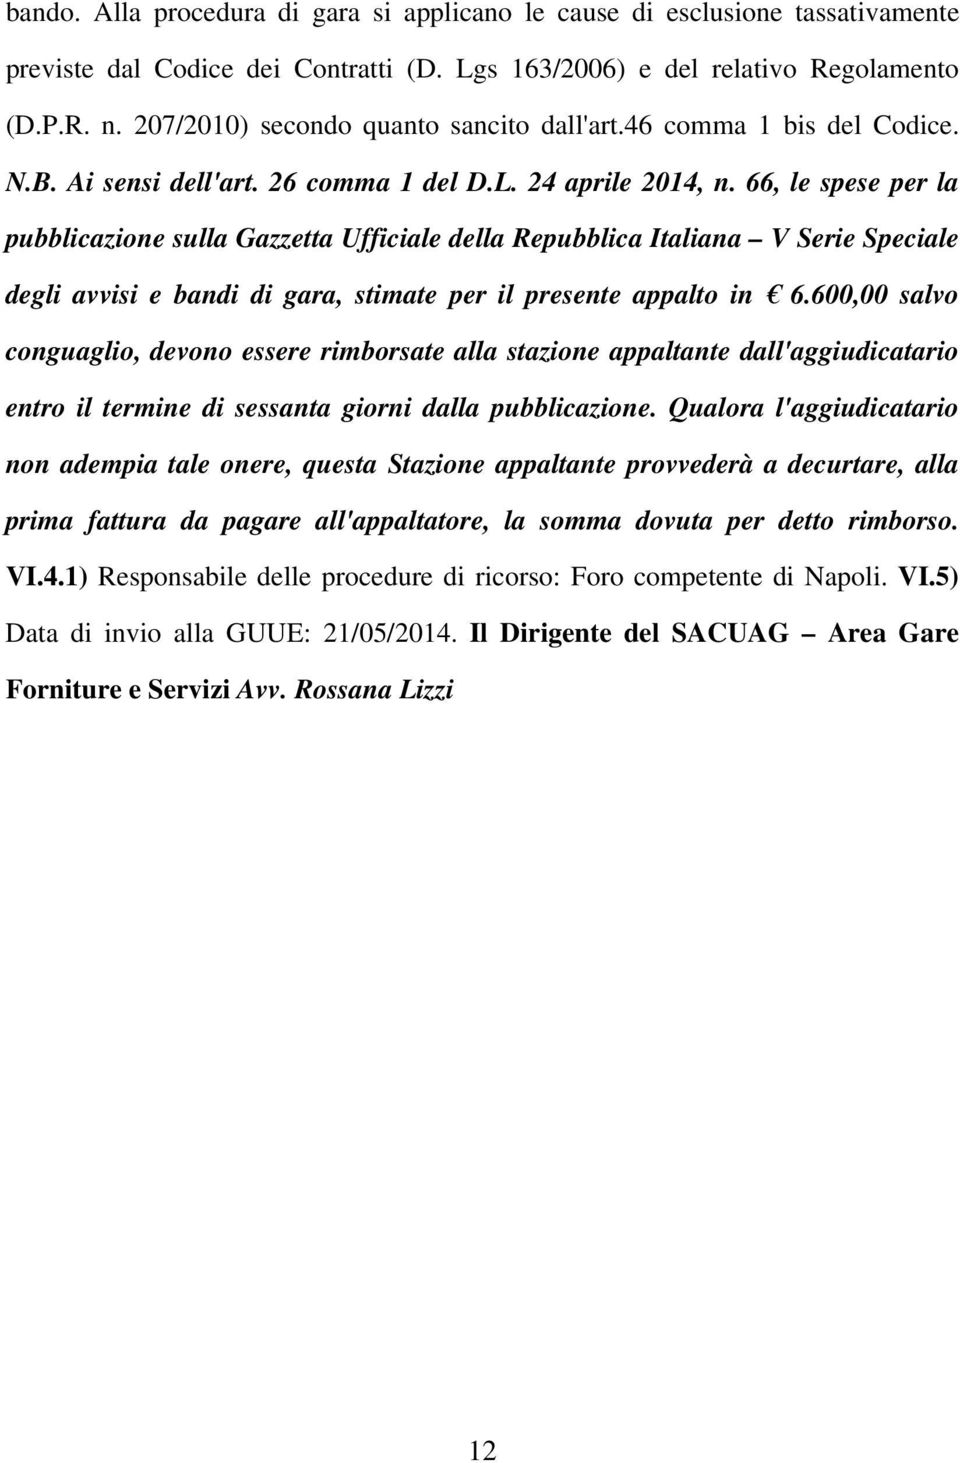 66, le spese per la pubblicazione sulla Gazzetta Ufficiale della Repubblica Italiana V Serie Speciale degli avvisi e bandi di gara, stimate per il presente appalto in 6.